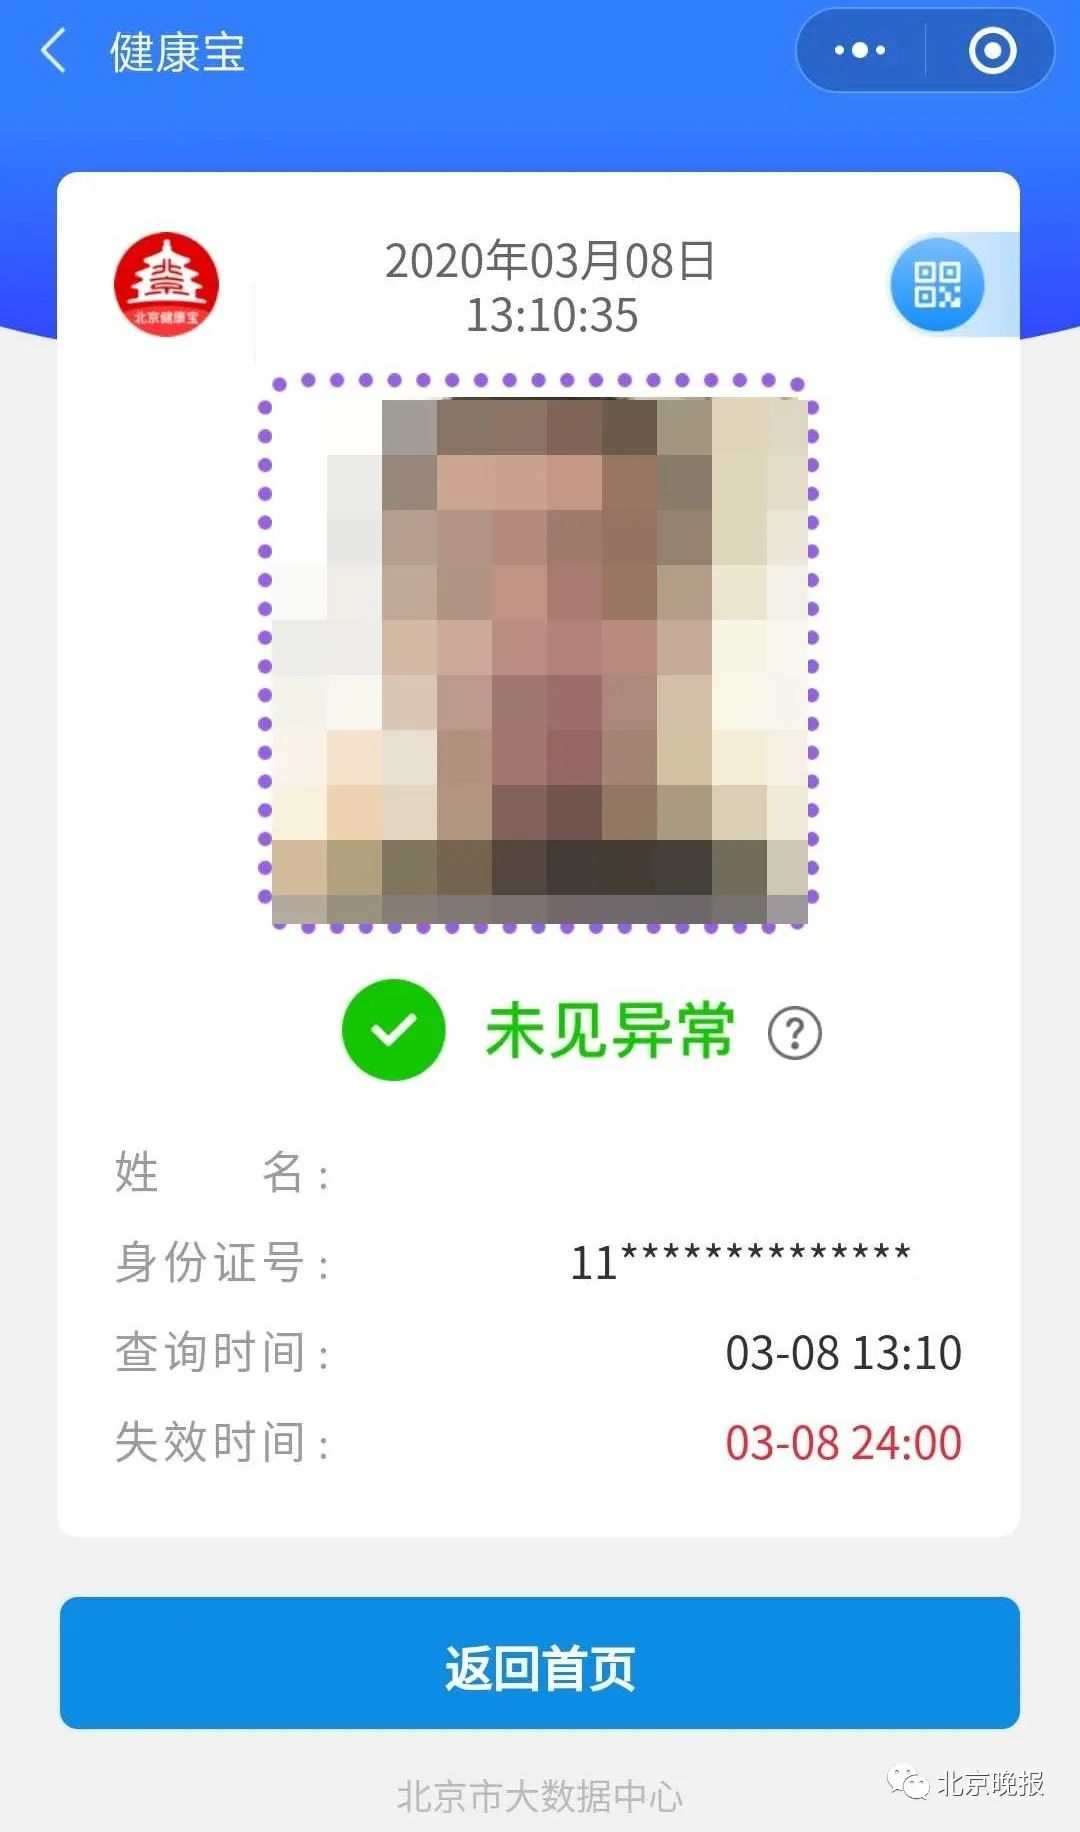 北京健康宝图片生成器图片